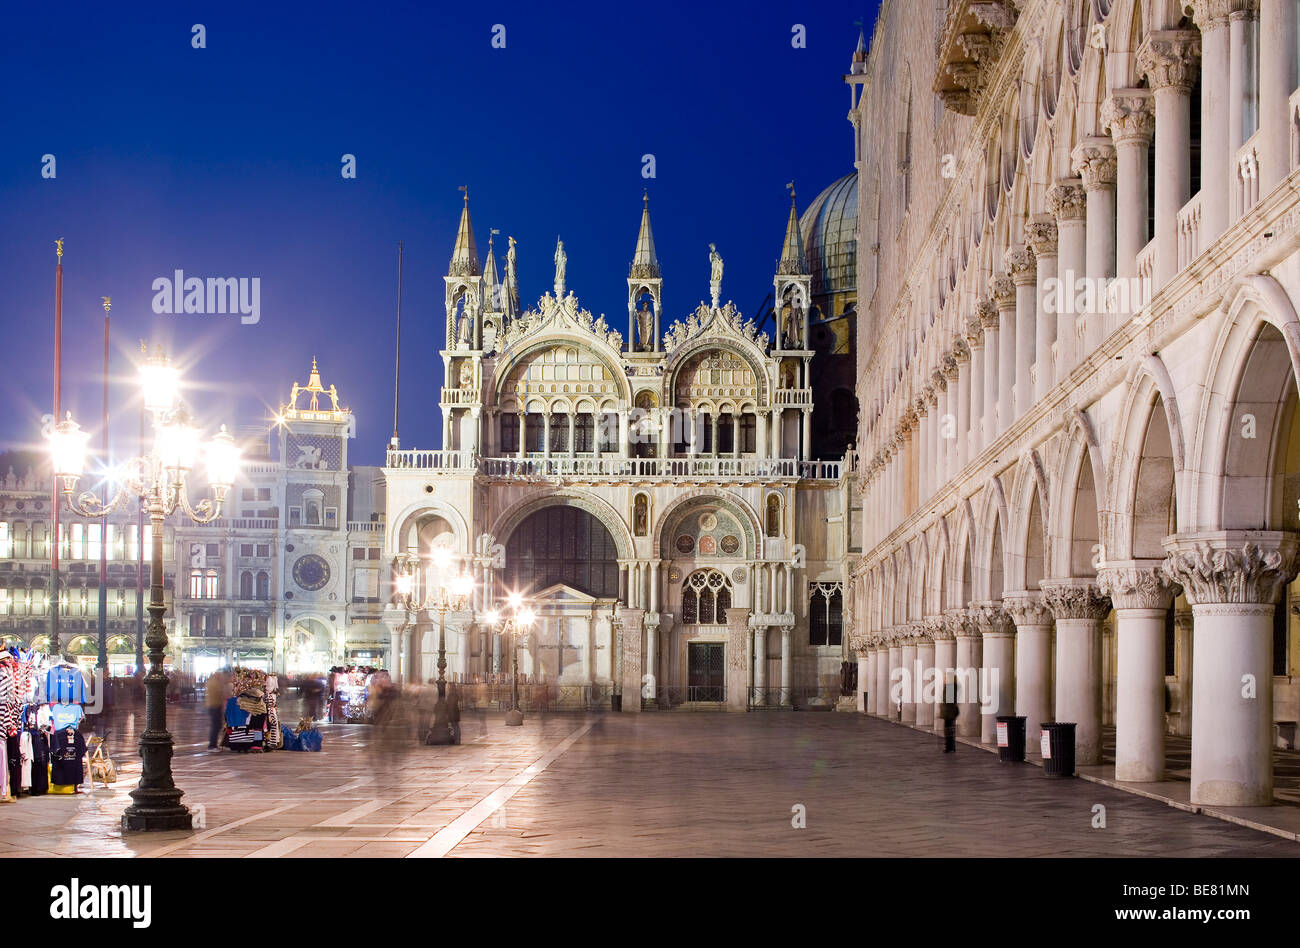 La Plaza de San Marcos, la Piazza San Marco, con la Basílica de San Marcos y el Palacio Ducal, el Palazzo Ducale, Venecia, Italia, Europa Foto de stock